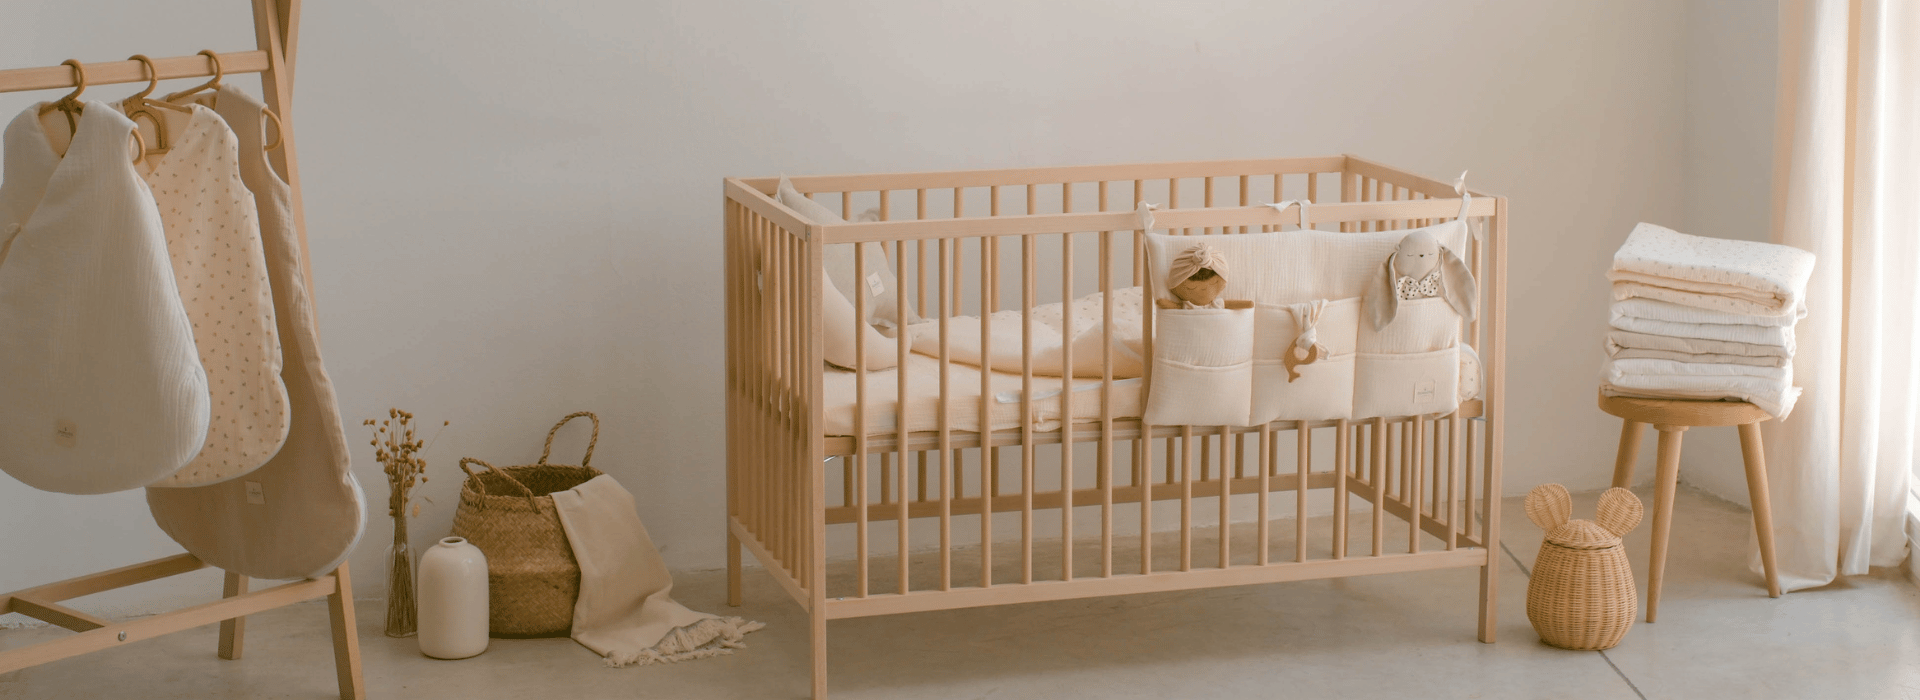 Como decorar la habitación del bebé con un estilo sencillo y acogedor